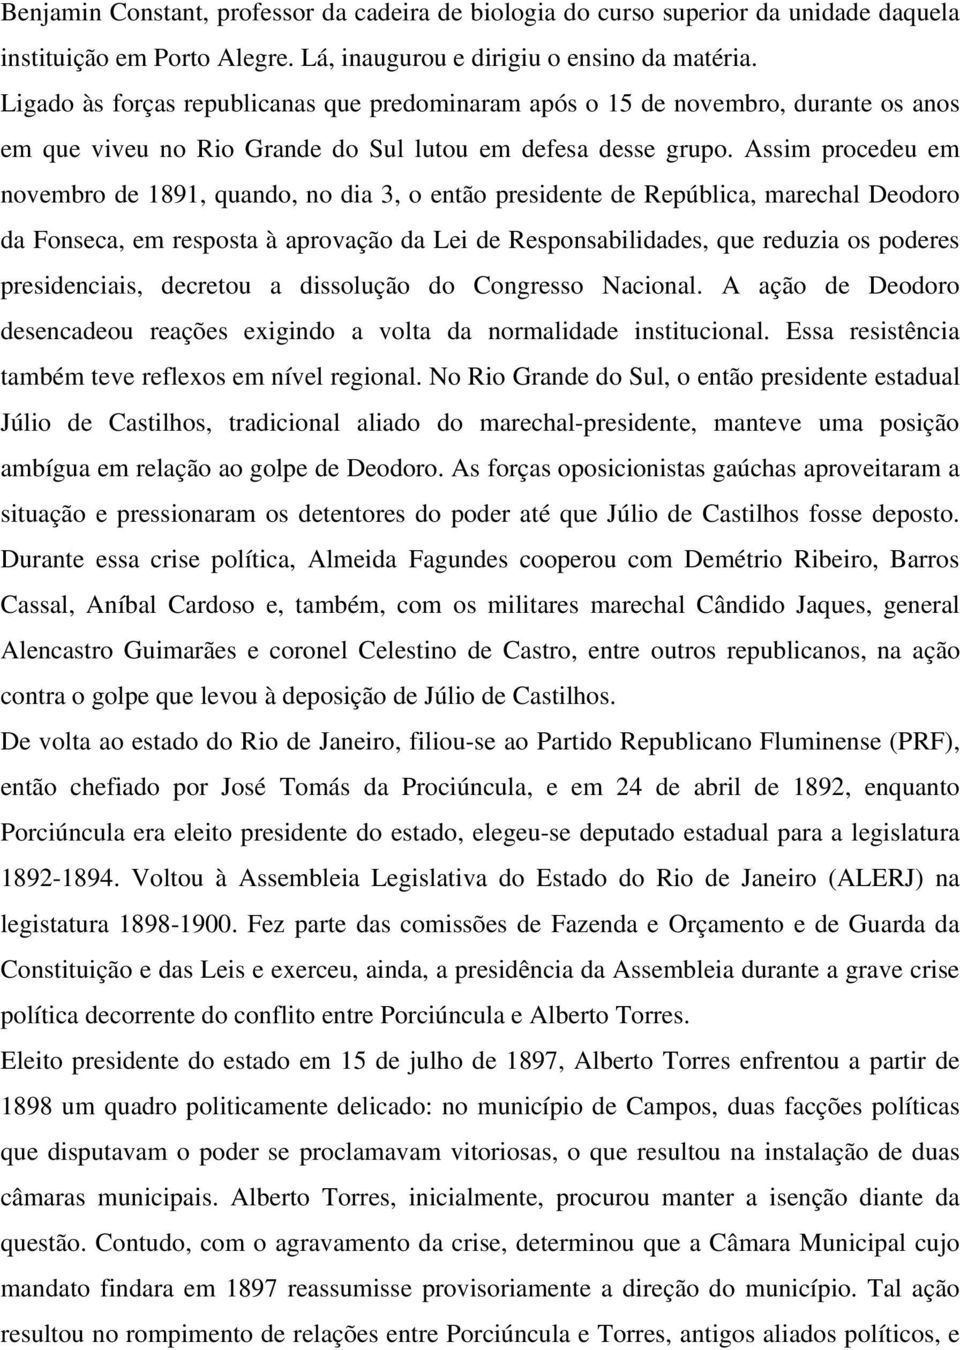 Assim procedeu em novembro de 1891, quando, no dia 3, o então presidente de República, marechal Deodoro da Fonseca, em resposta à aprovação da Lei de Responsabilidades, que reduzia os poderes